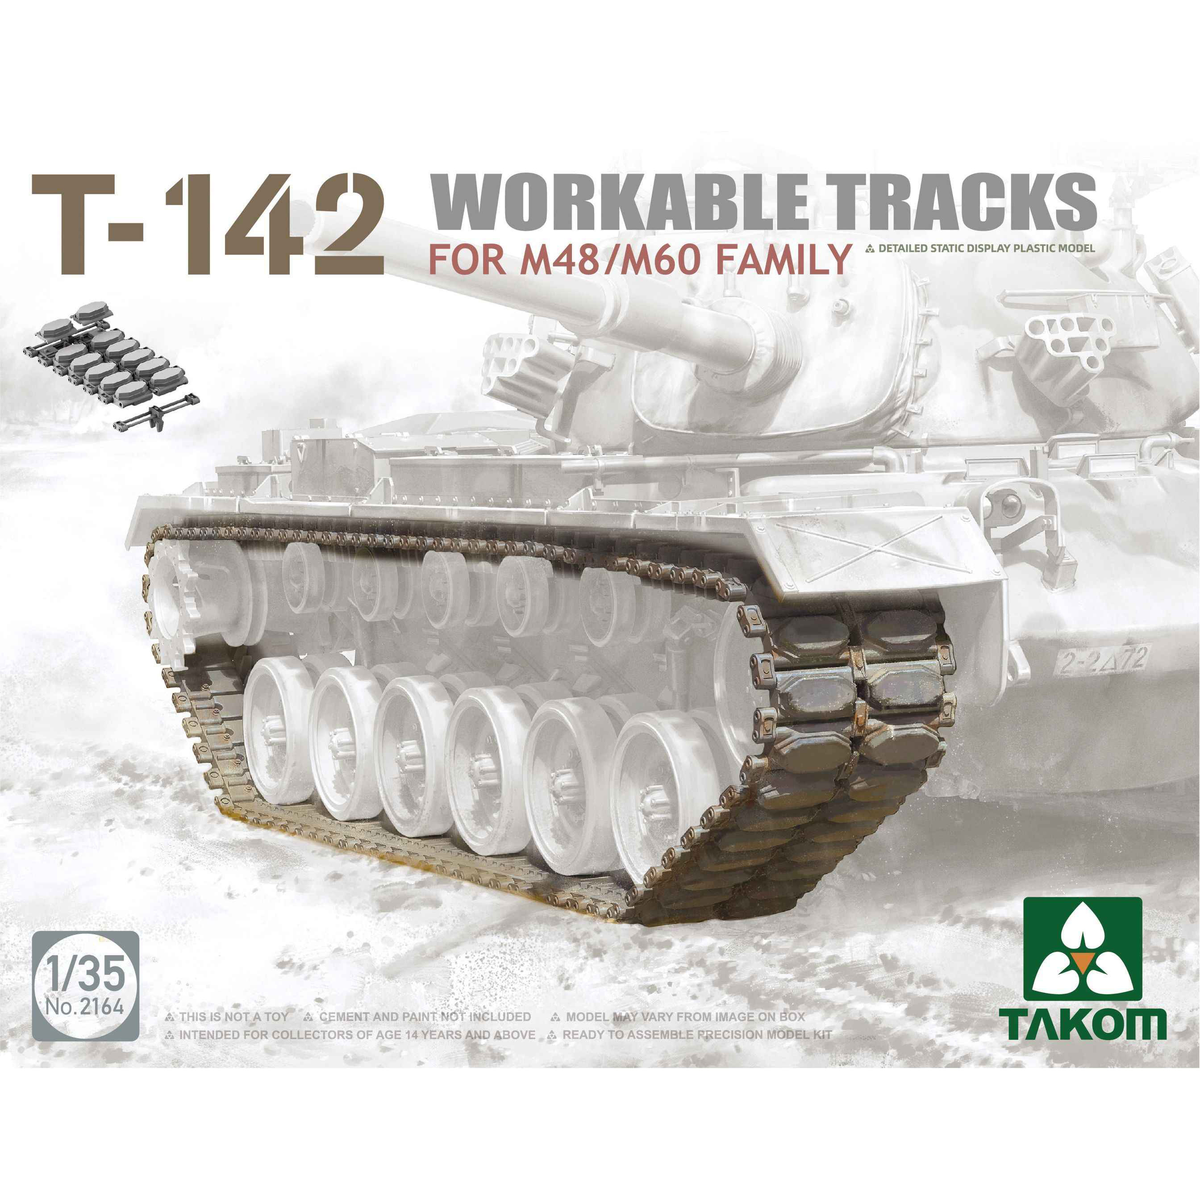 Takom 2164 1:35 T-142 Workable Tracks for M48/M60 Family Plastic Model Kit